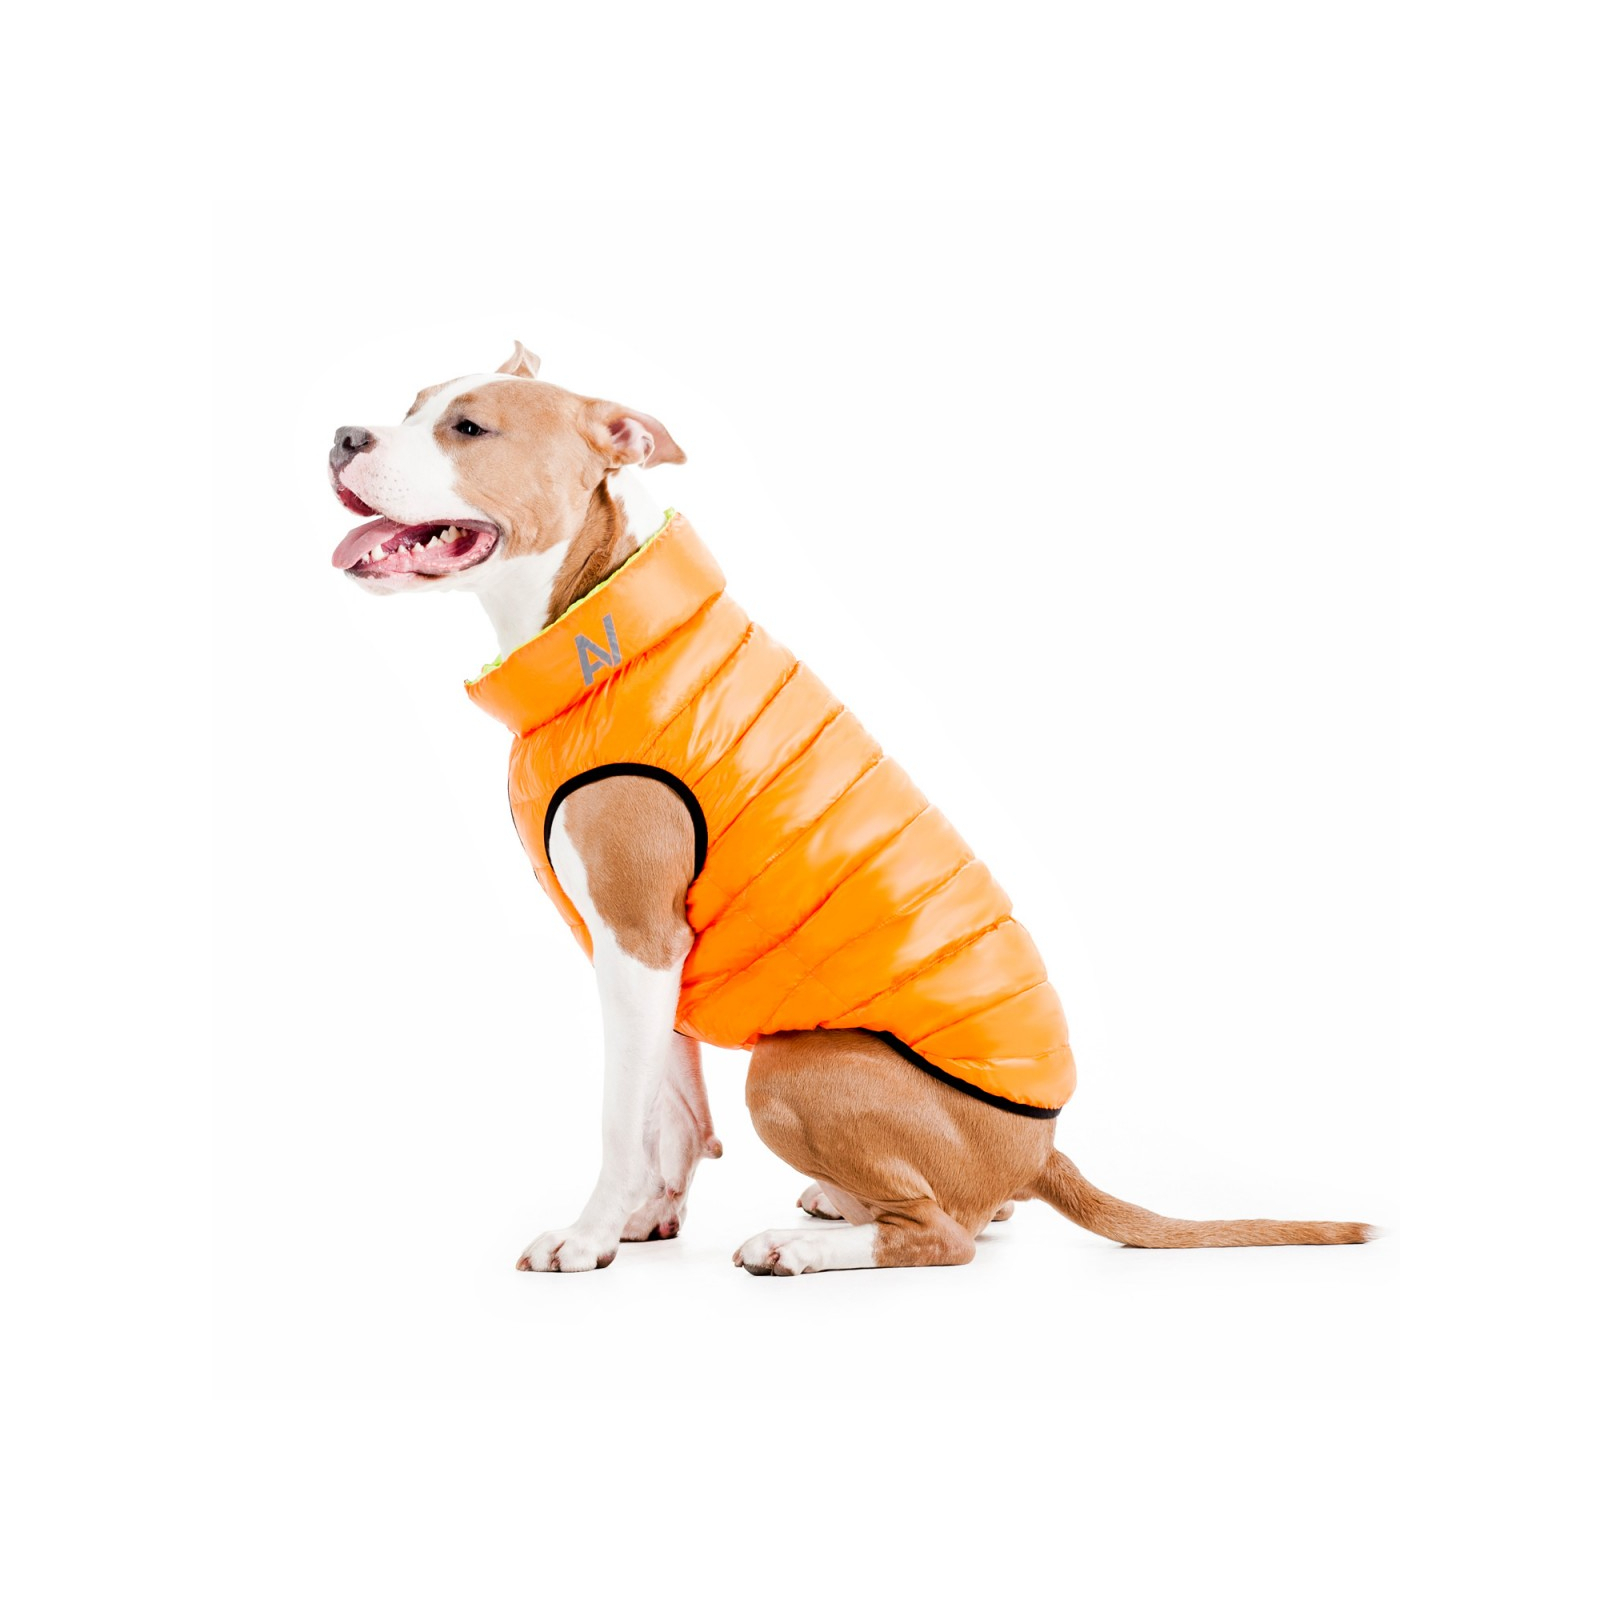 Курточка для животных Airy Vest двусторонняя L 55 оранжево-салатовая (1634) изображение 8